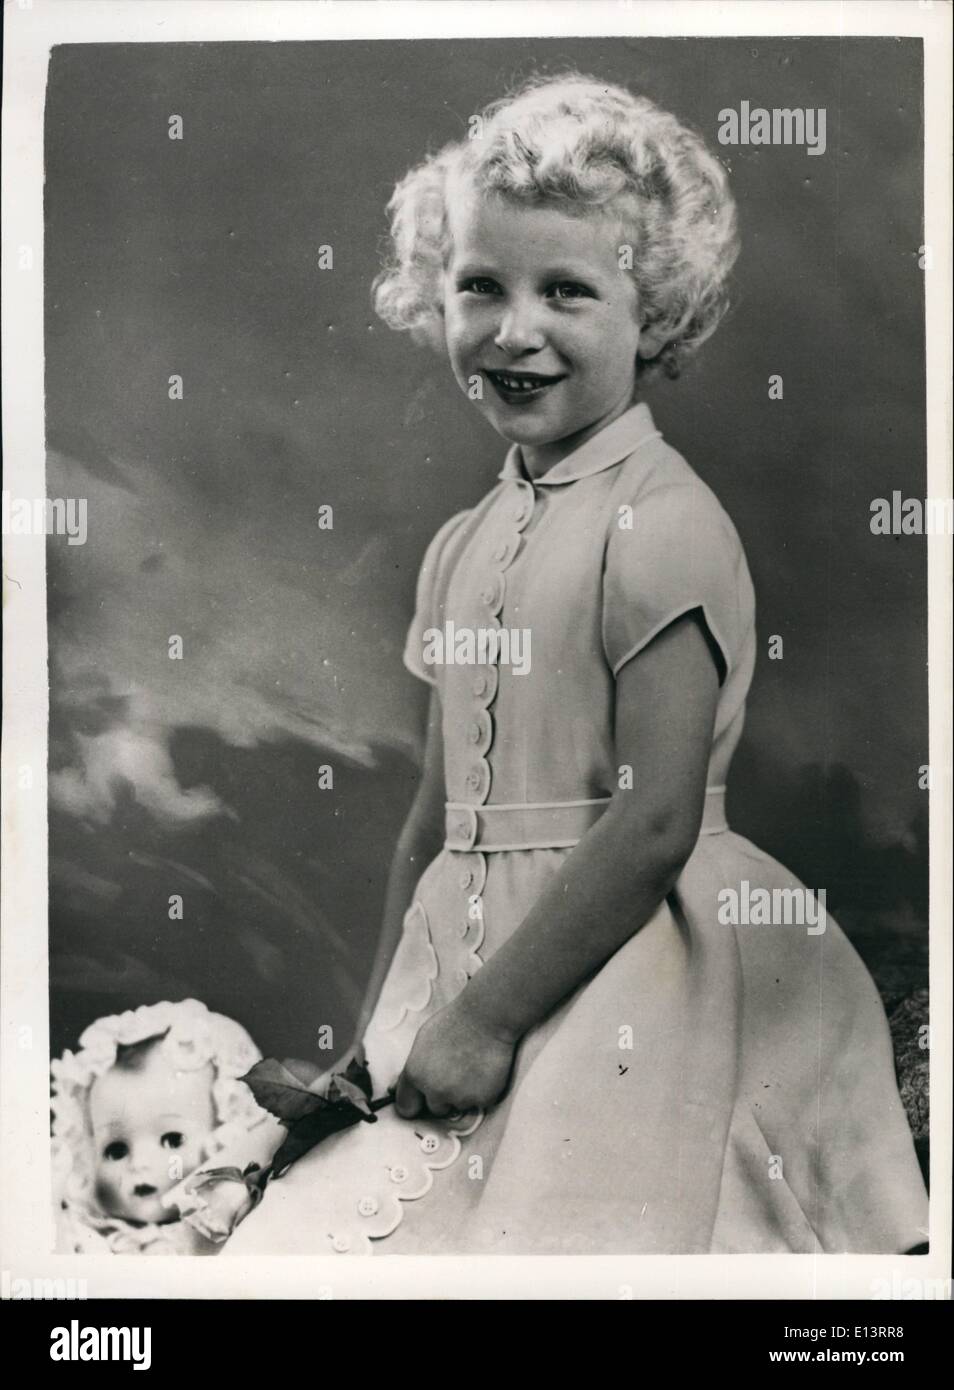 27 mar 2012 - S.A.R. Princess Anne's quinto compleanno. Nuovo ritratto.: una nuova e affascinante studio di S.A.R. Princess Anne in occasione del suo quinto compleanno. La Principessa indossa un rosa abito di lino bordati con tubazioni in bianco Foto Stock